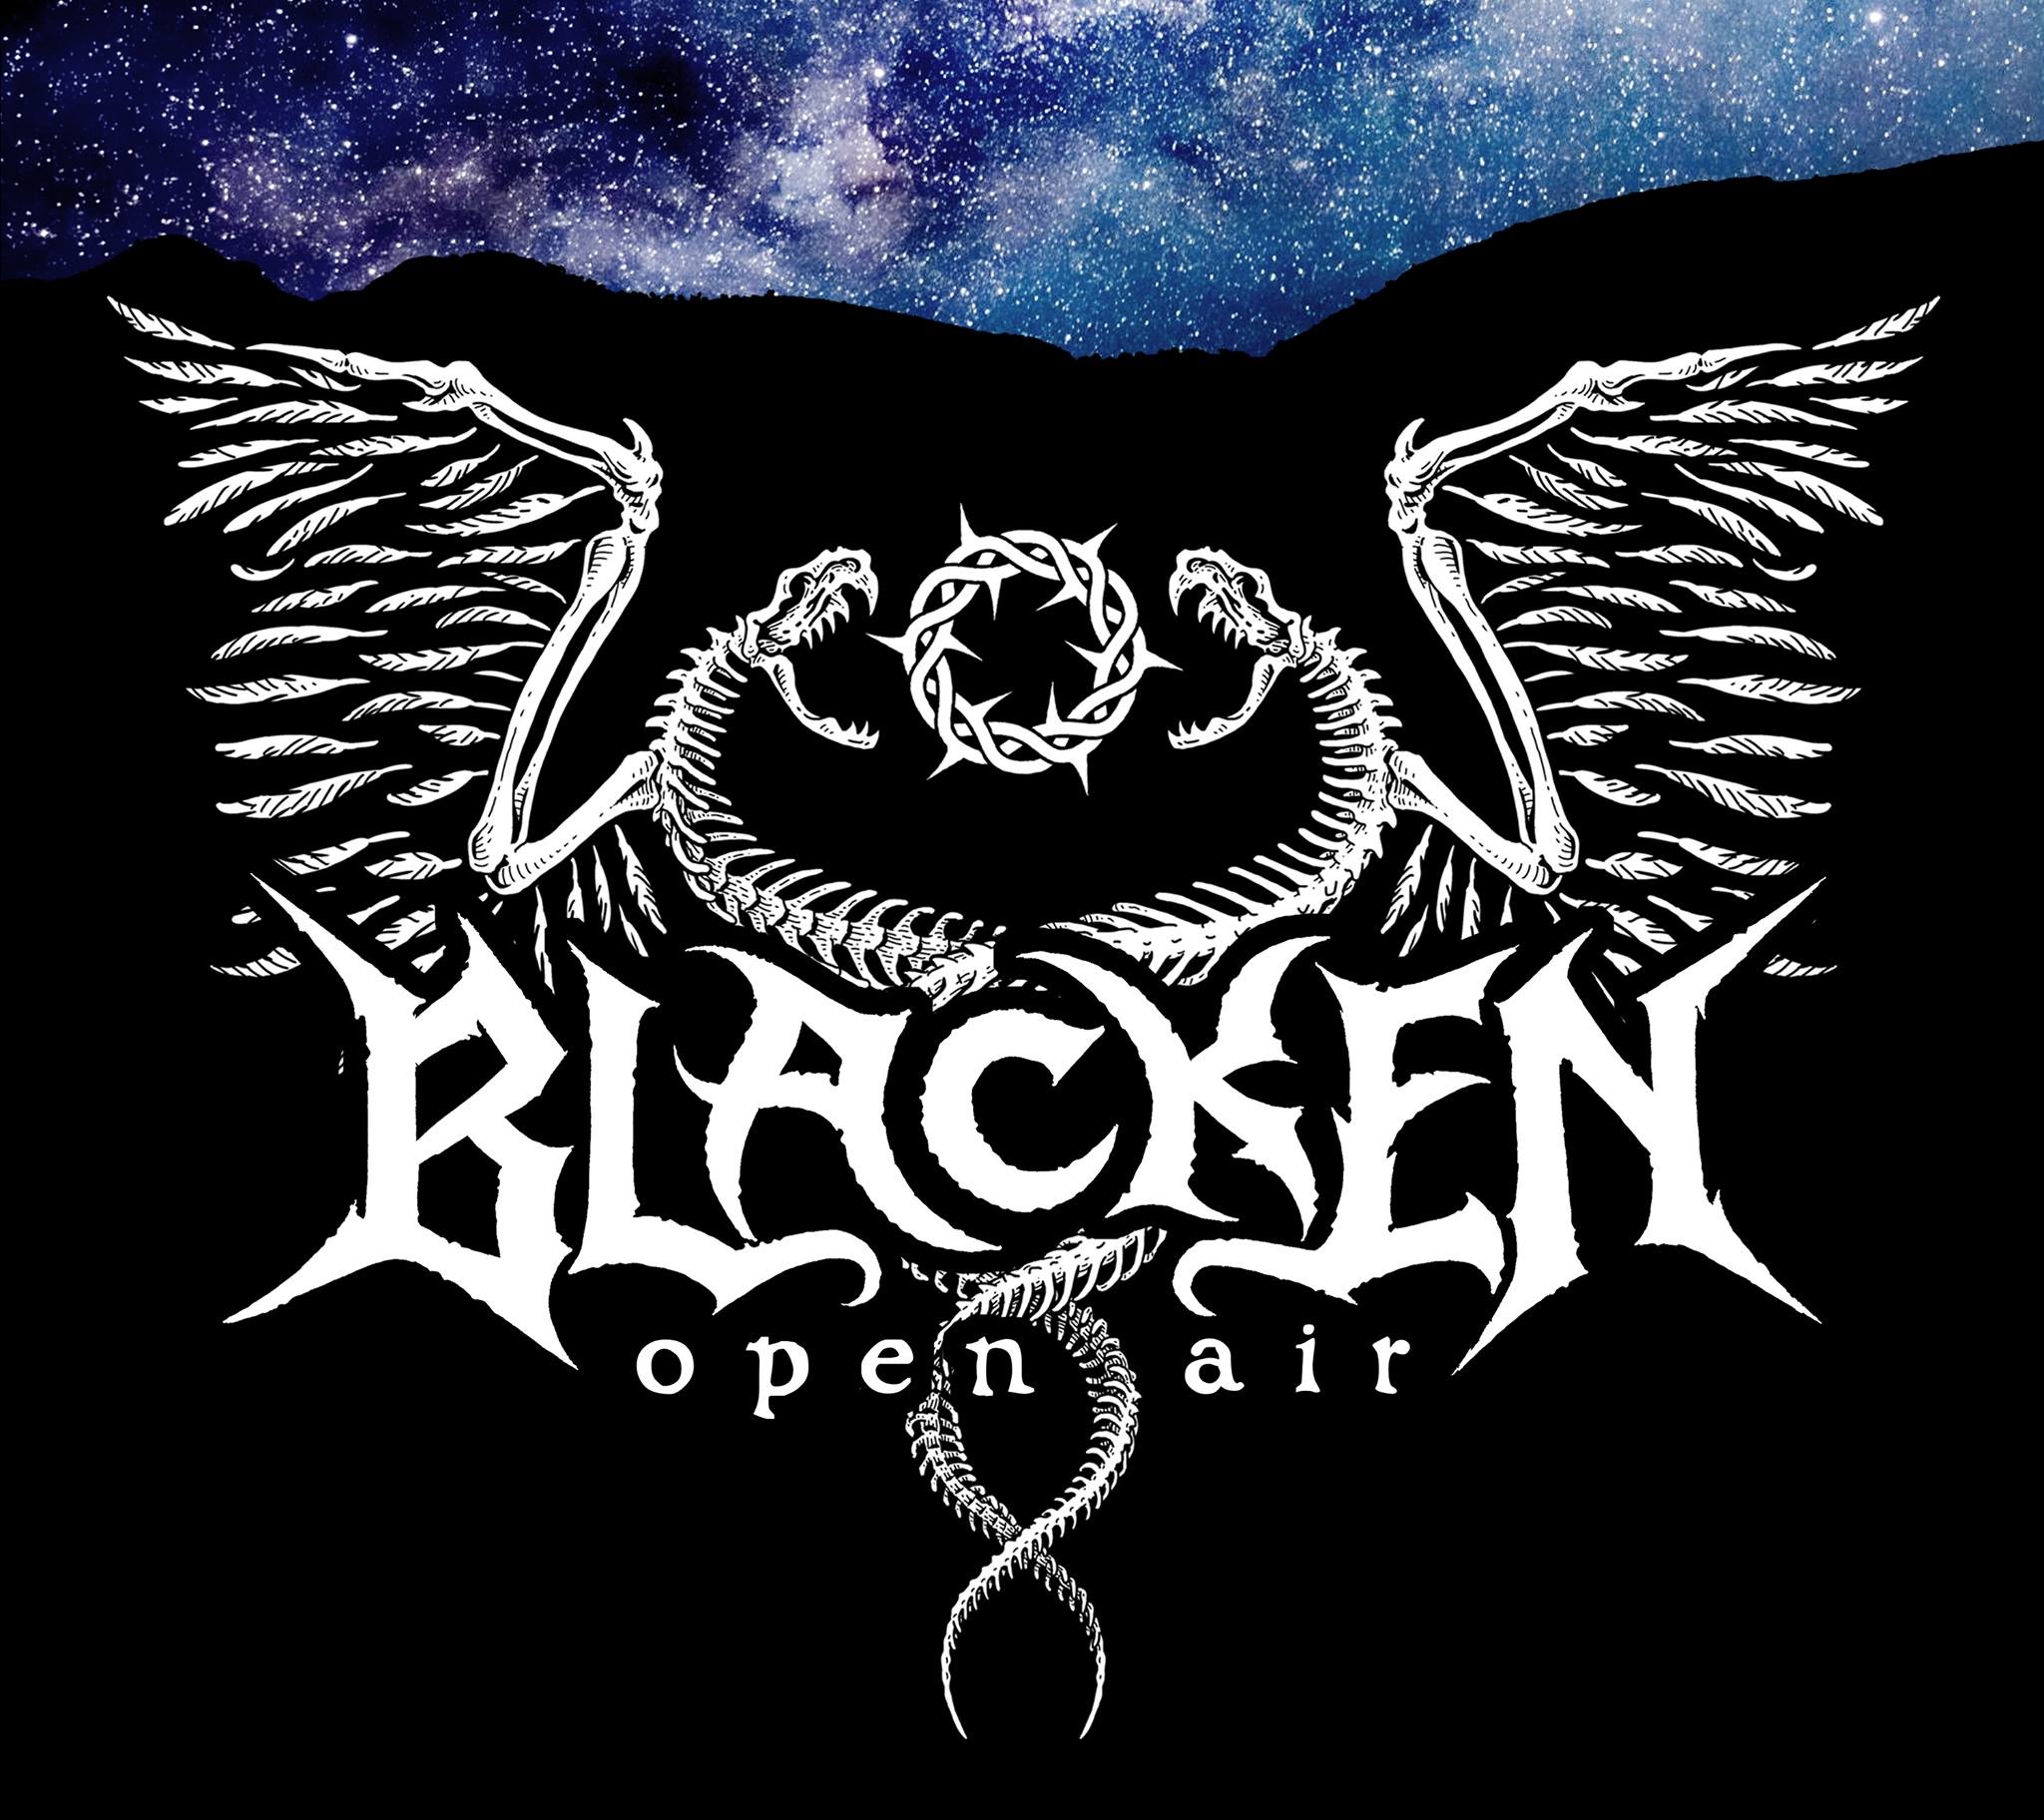 Blacken Open Air